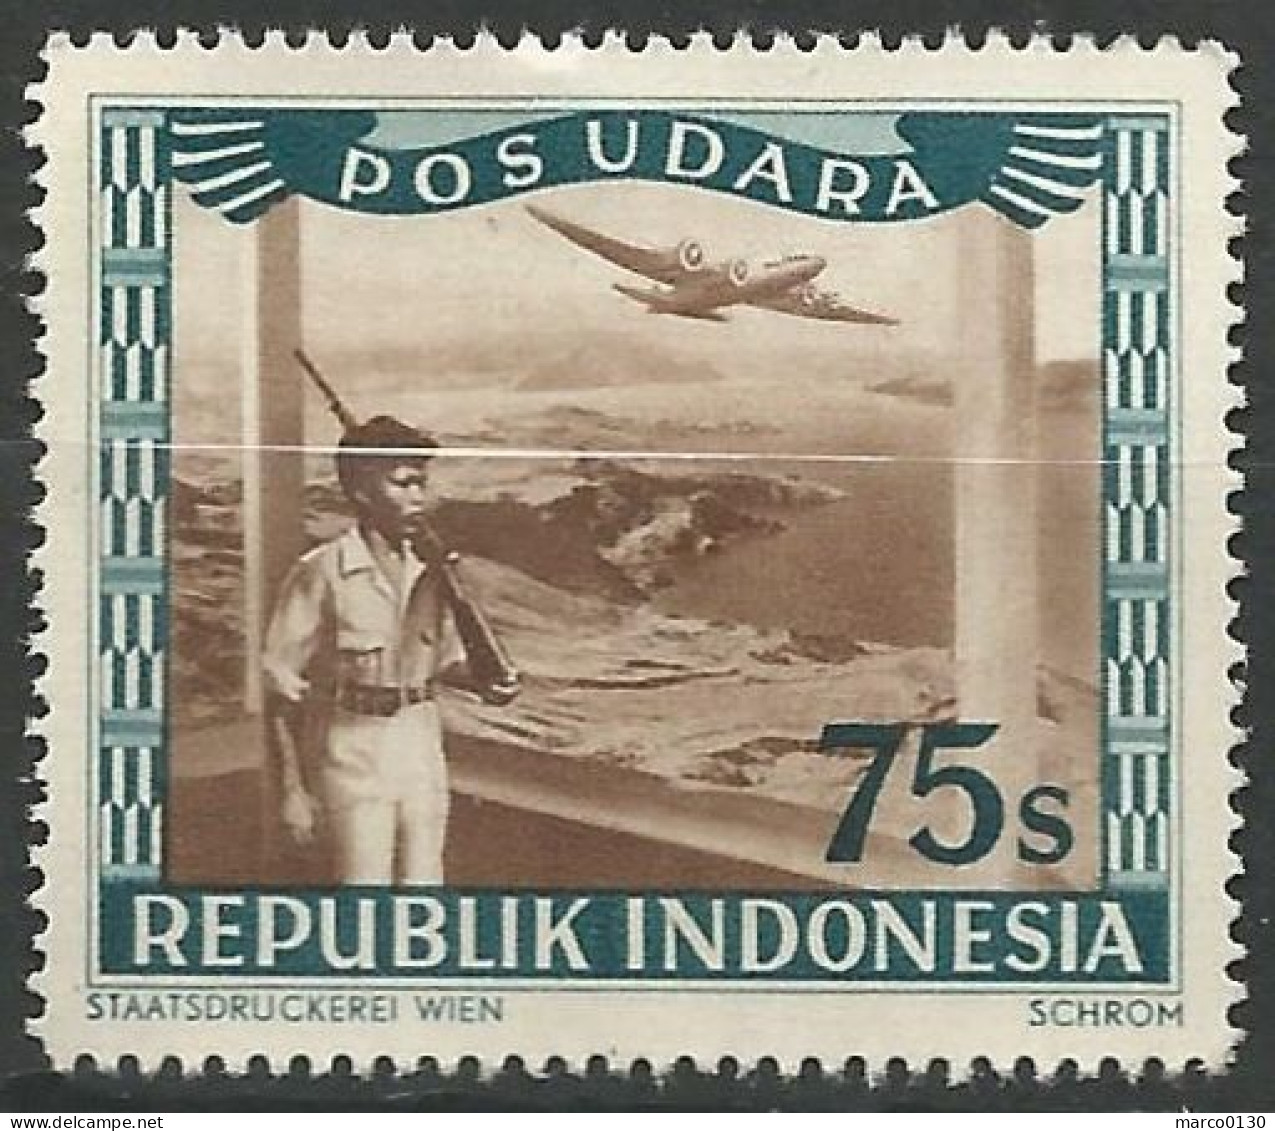 INDONESIE  / POSTE AERIENNE N° SCOTT 24 NEUF Sans Gomme - Indonesia